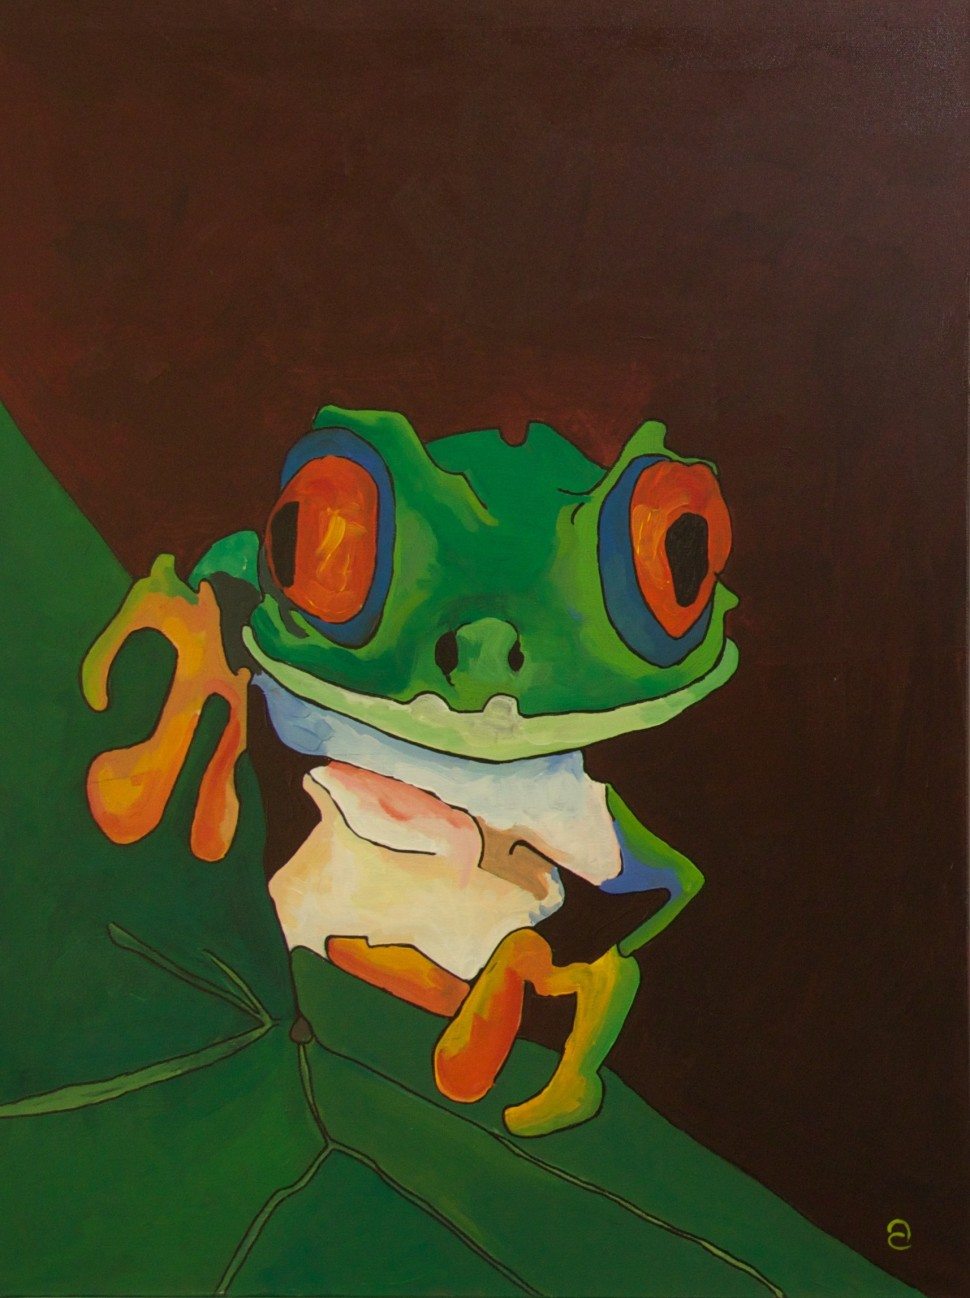 Maleri av frosk fra Auroras utstilling i Oslo Rådhus 2014